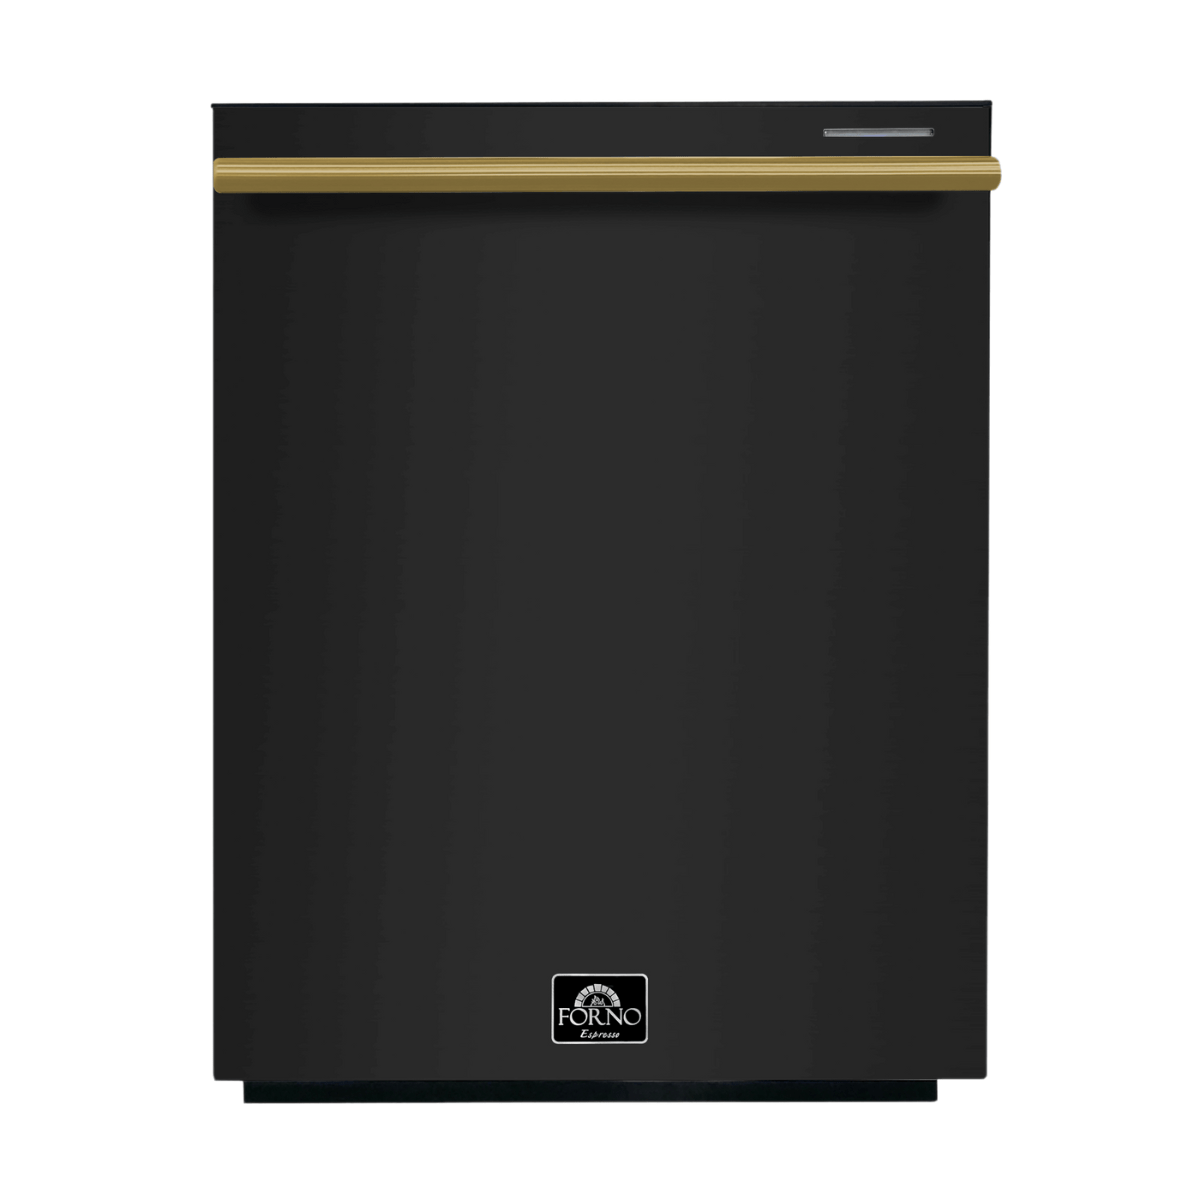 Forno Espresso 24" Built-In Dishwasher in Black with Antique Brass Handles, FDWBI8067-24BLK Dishwasher FDWBI8067-24BLK Luxury Appliances Direct